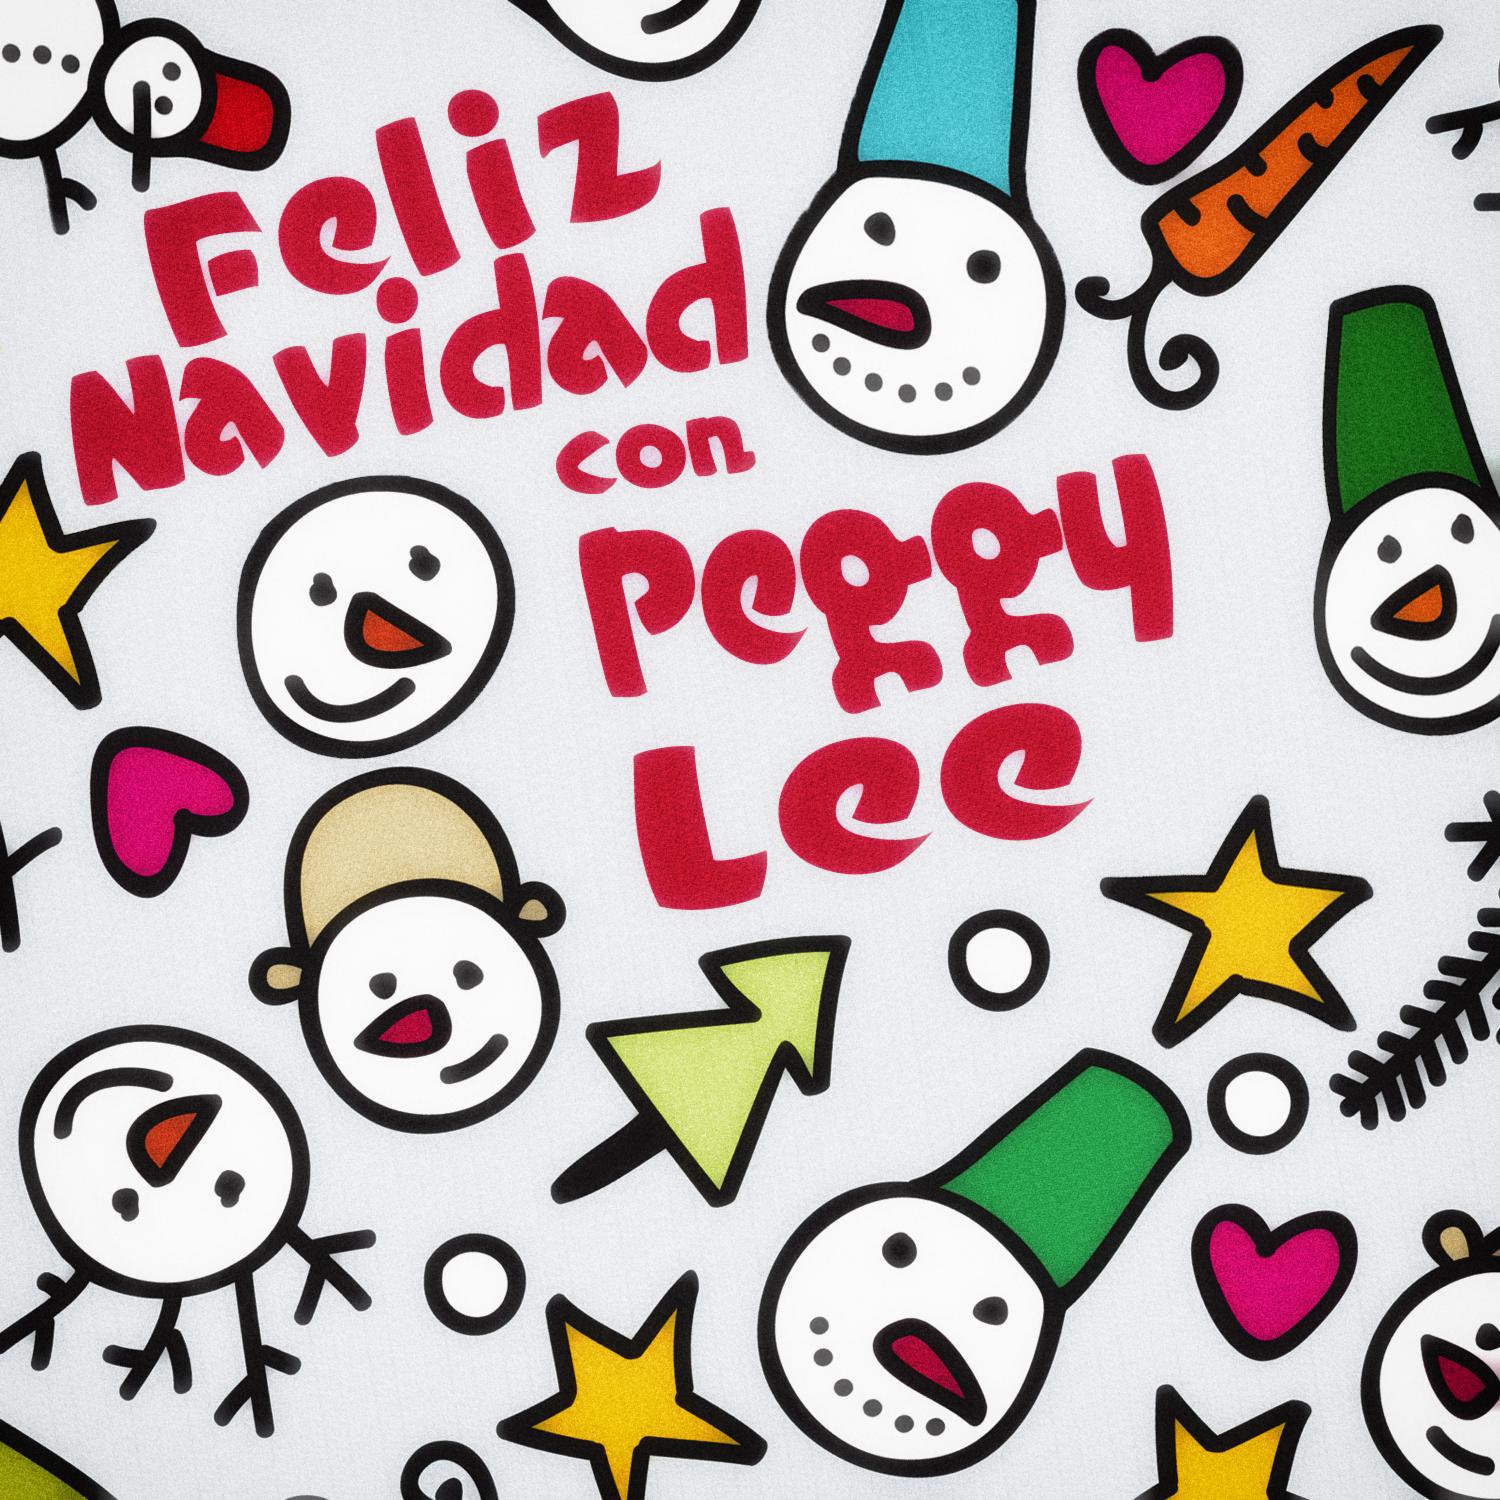 Feliz Navidad Con Peggy Lee专辑